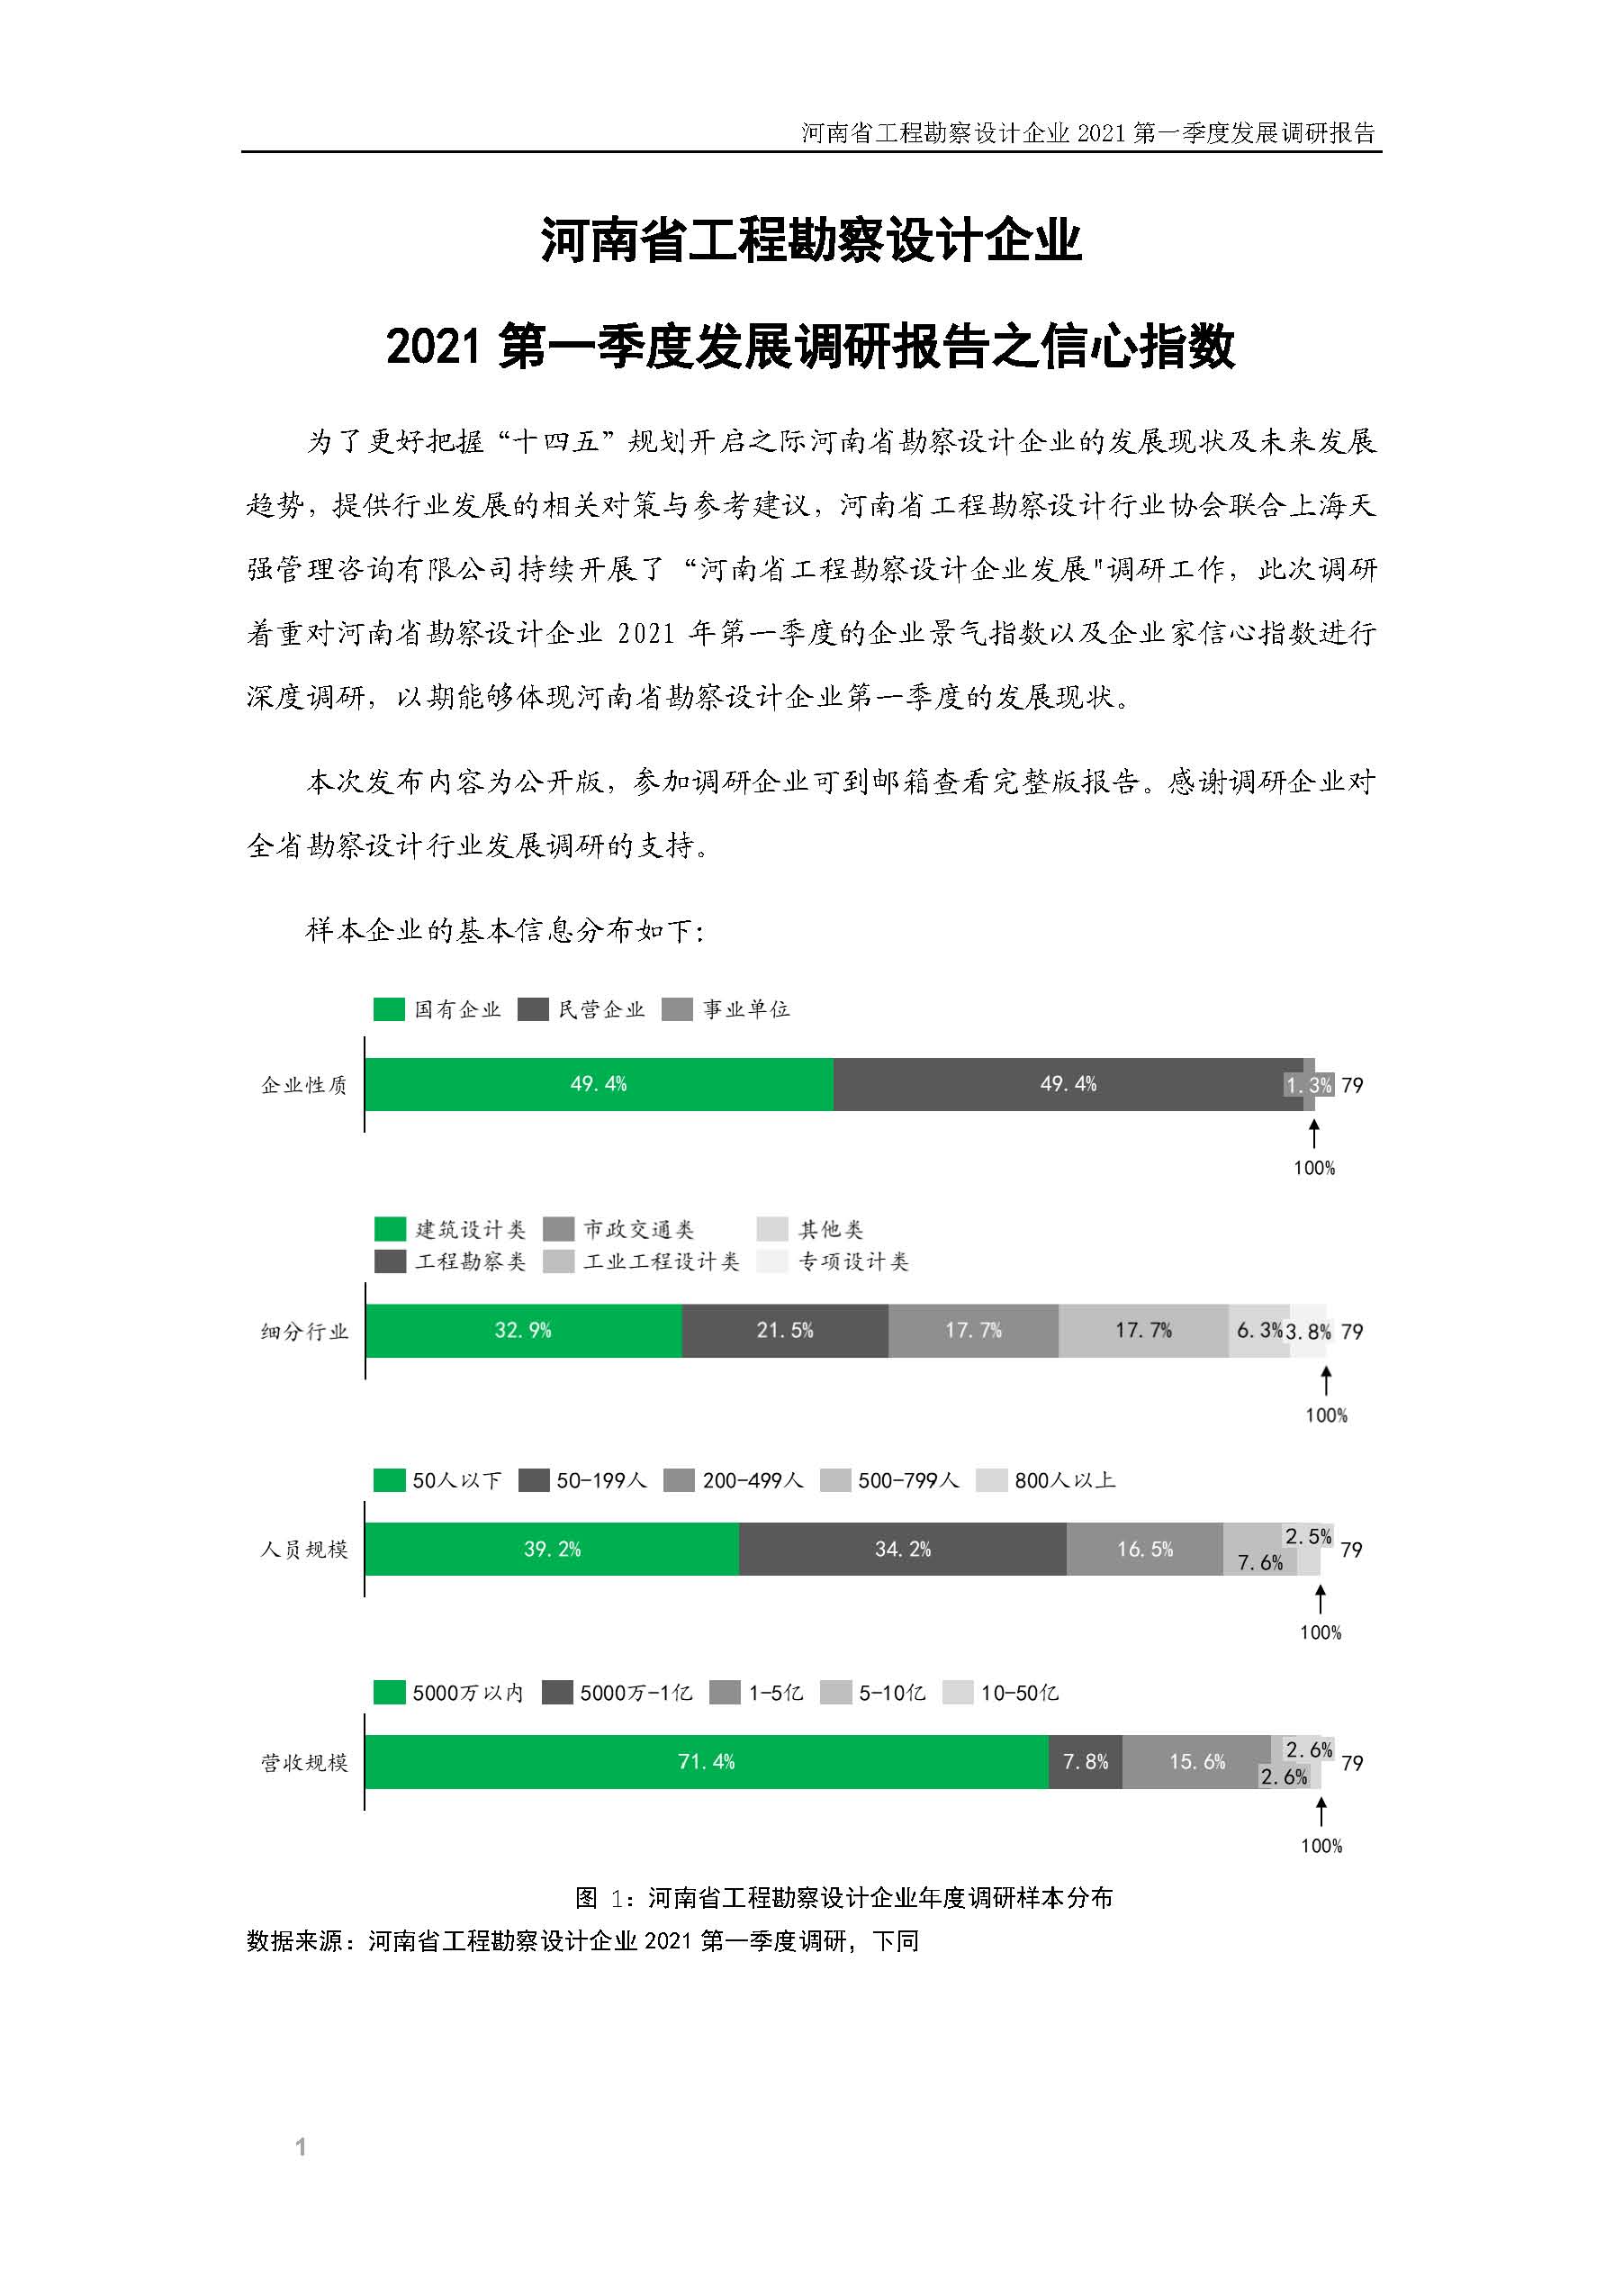 河南省工程勘察设计企业2021第一季度发展调研报告二_页面_2.jpg